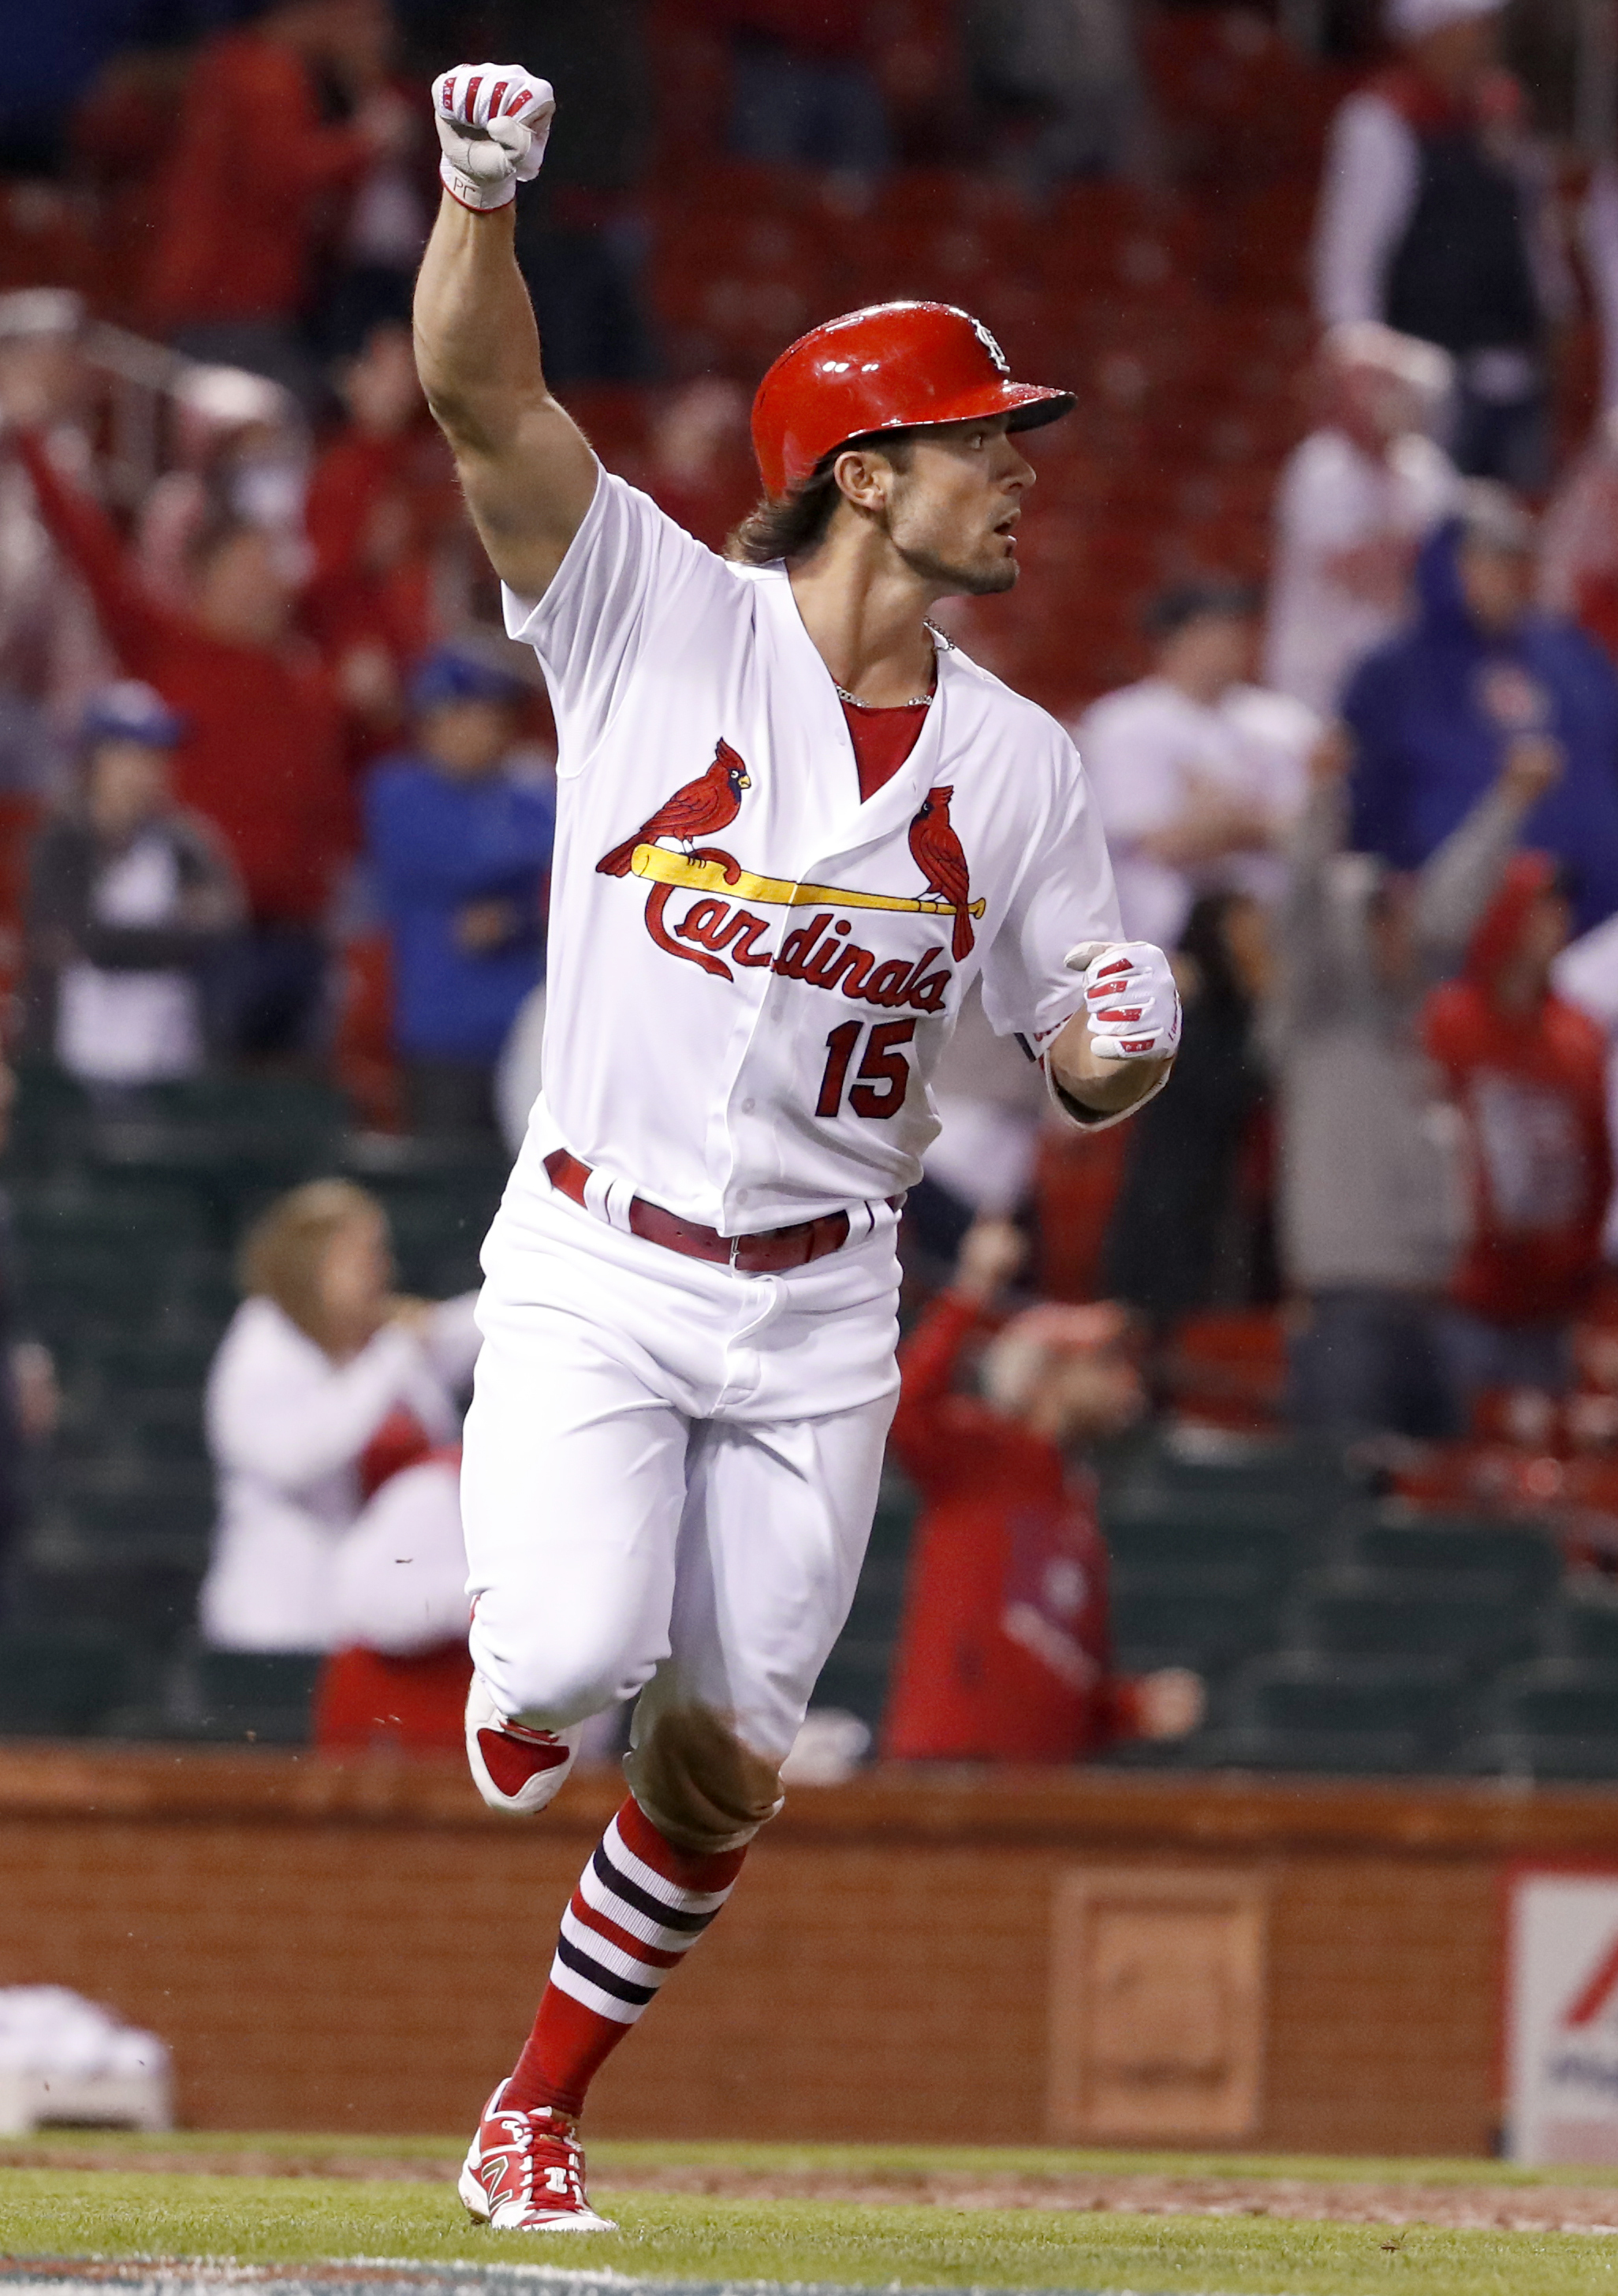 Matt Carpenter: The St. Louis Cardinals' Ben Zobrist